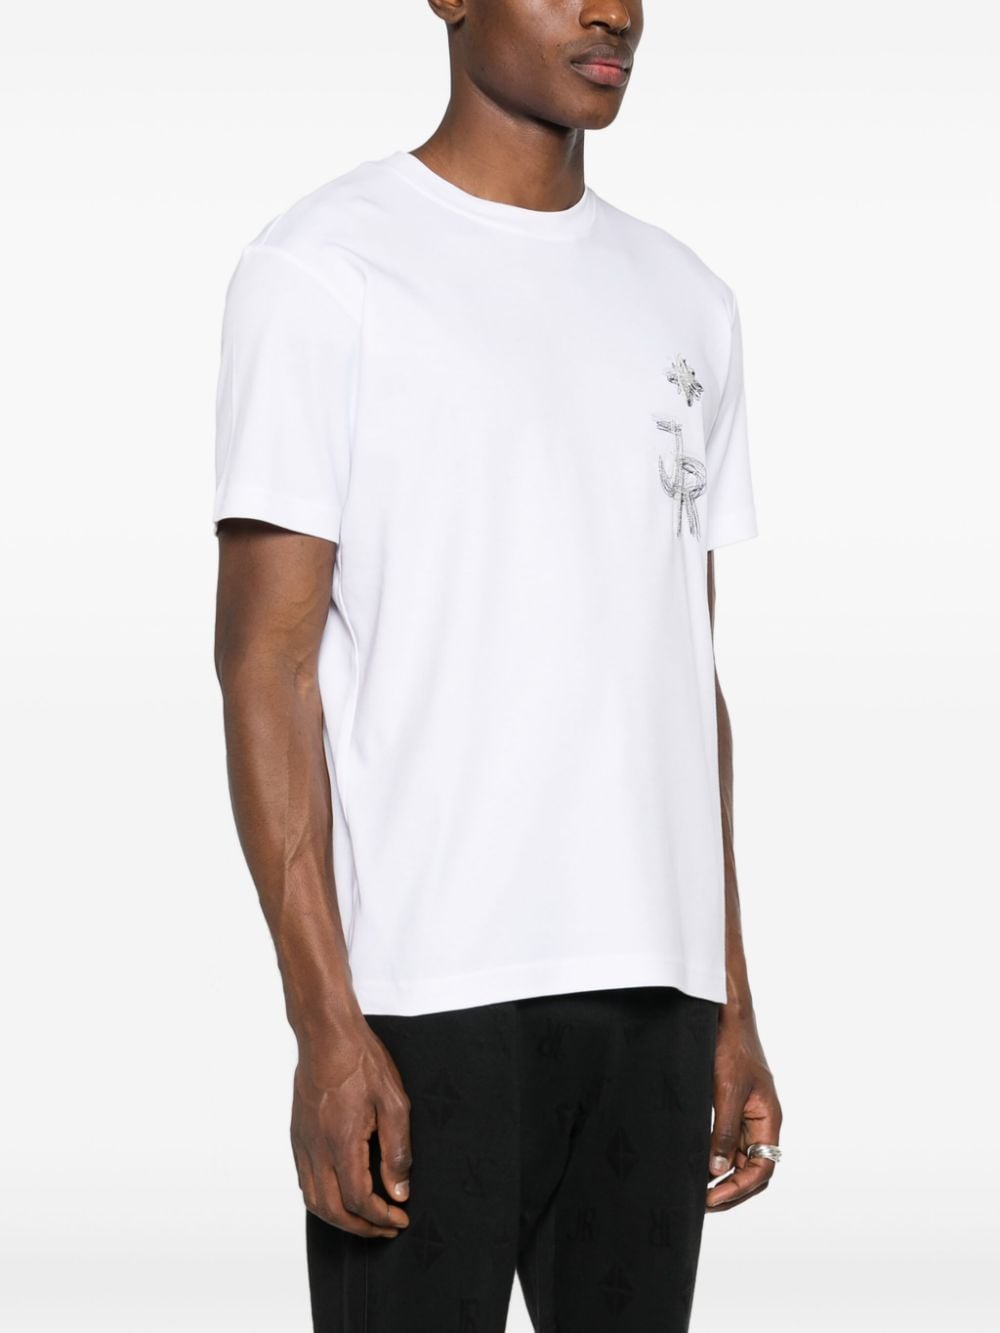 White graphite logo t-shirt